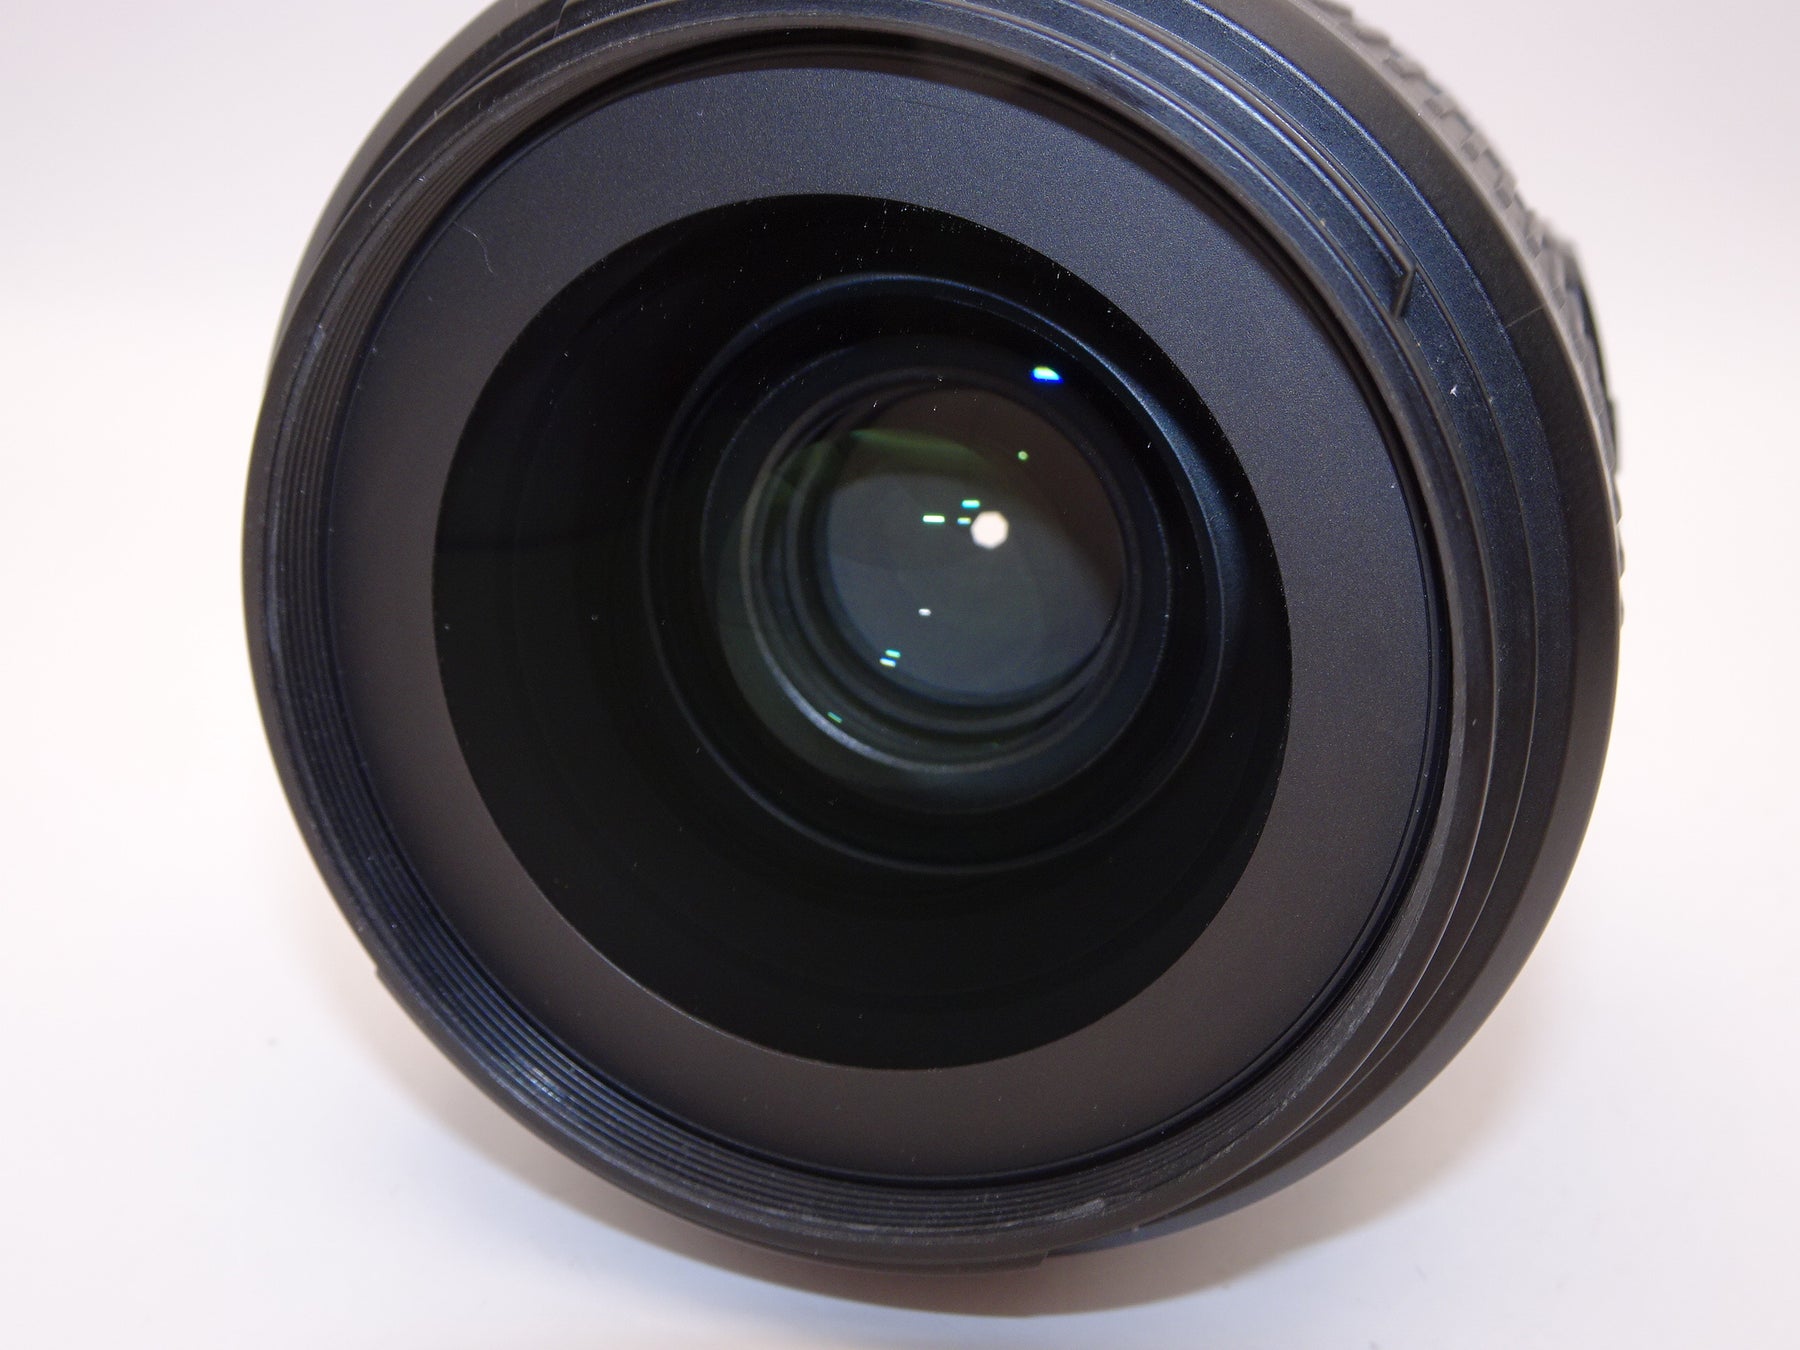 【外観並級】Nikon 単焦点レンズ AF-S NIKKOR 35mm f/1.8G ED フルサイズ対応